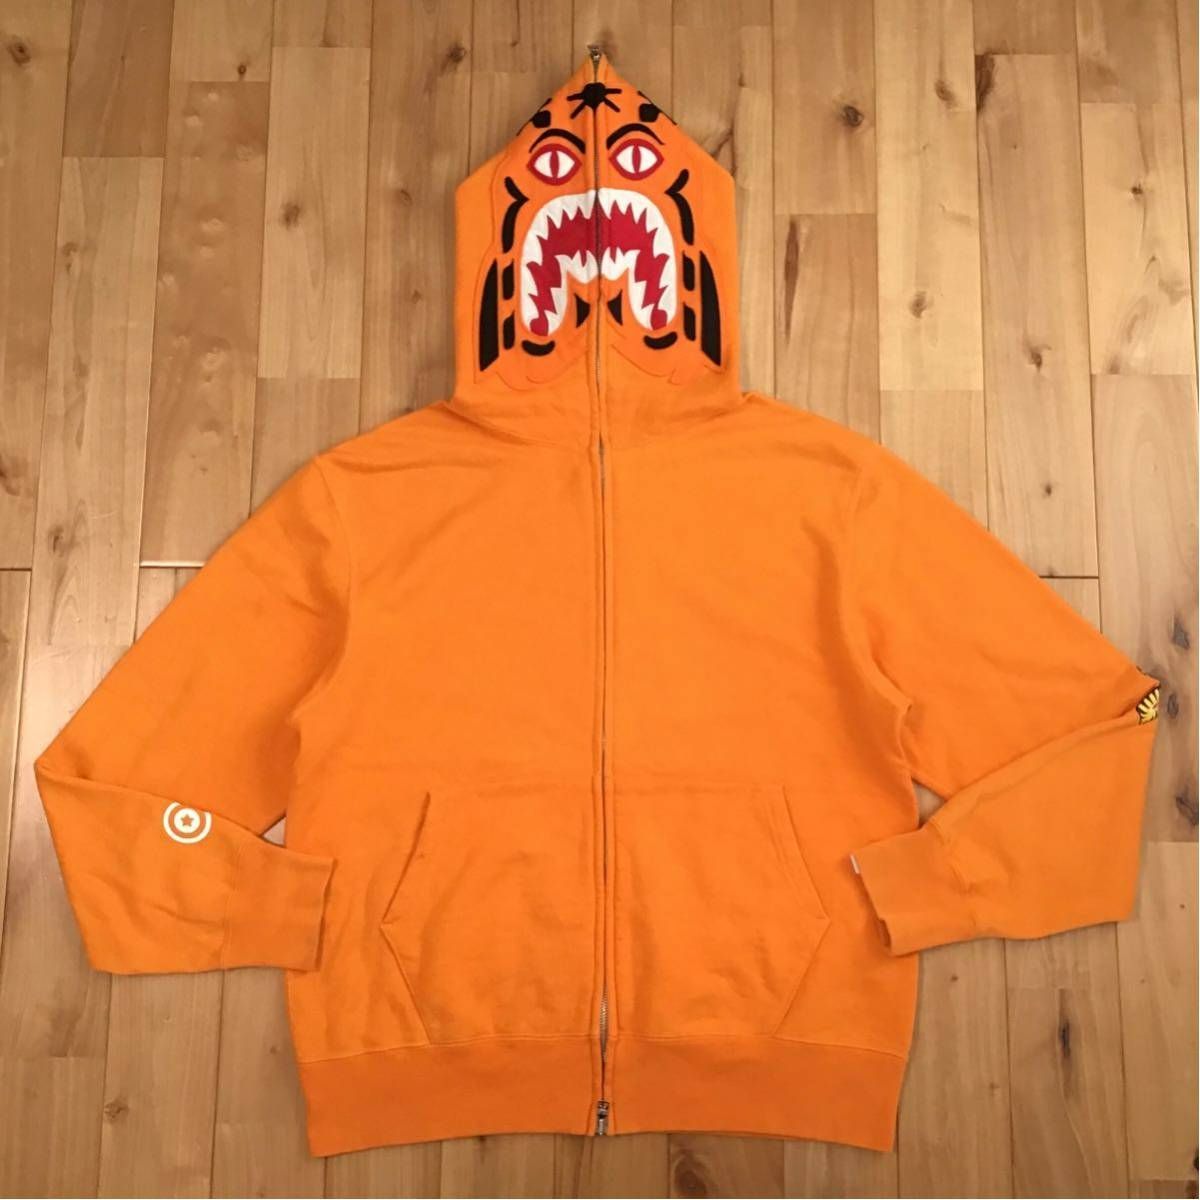 ★初期★ タイガー パーカー Sサイズ orange tiger full zip hoodie a bathing ape BAPE エイプ ベイプ  アベイシングエイプ NIGO